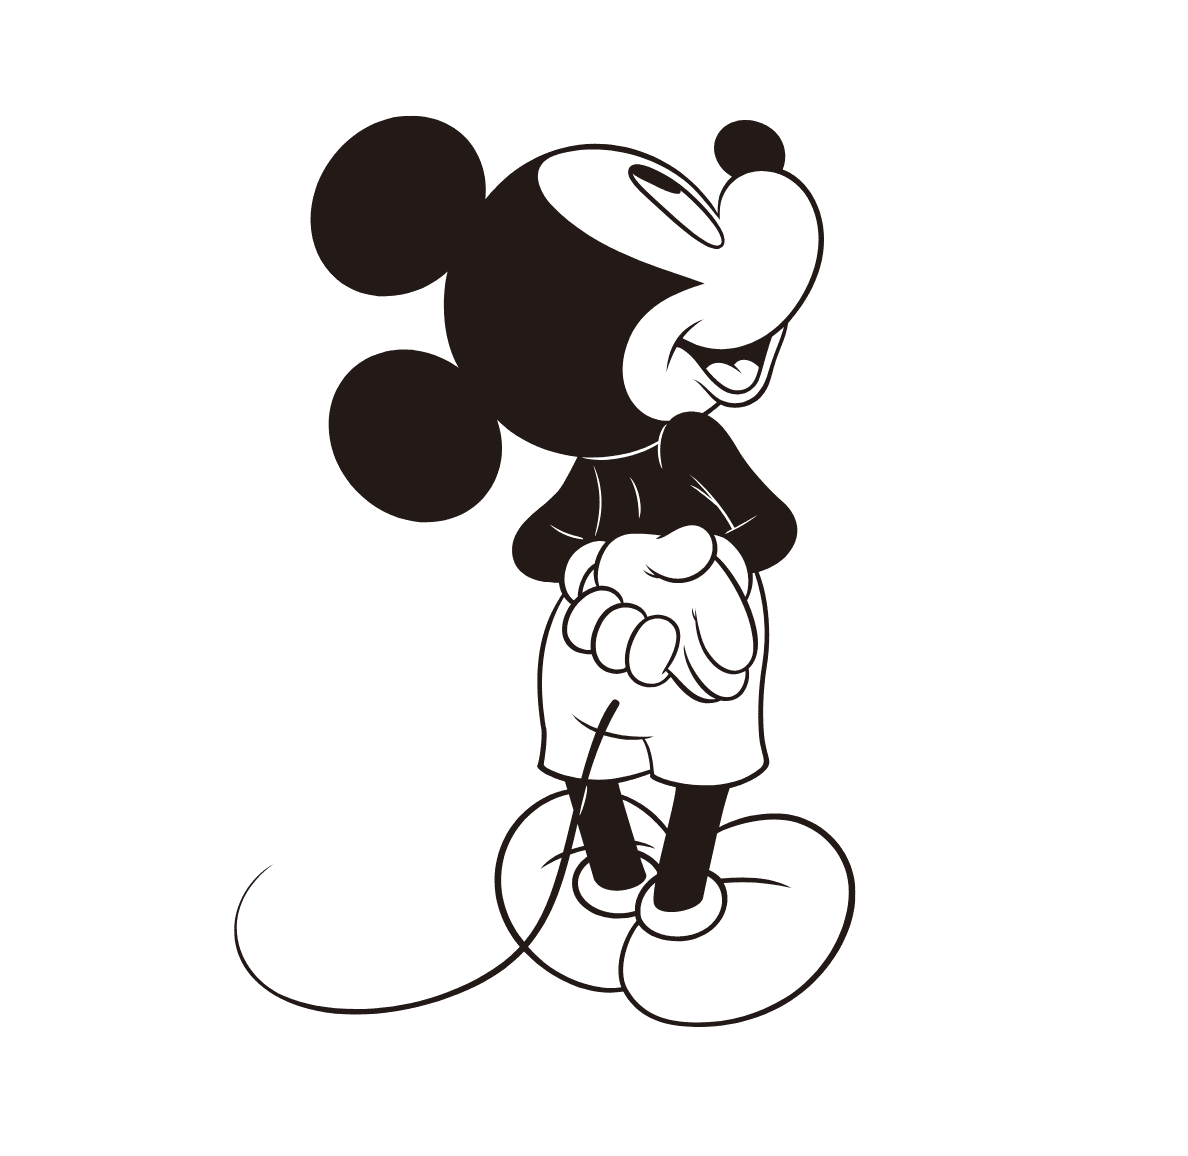 GIF animé de Mickey Mouse levant la tête, de dos, puis se retournant et dansant joyeusement.